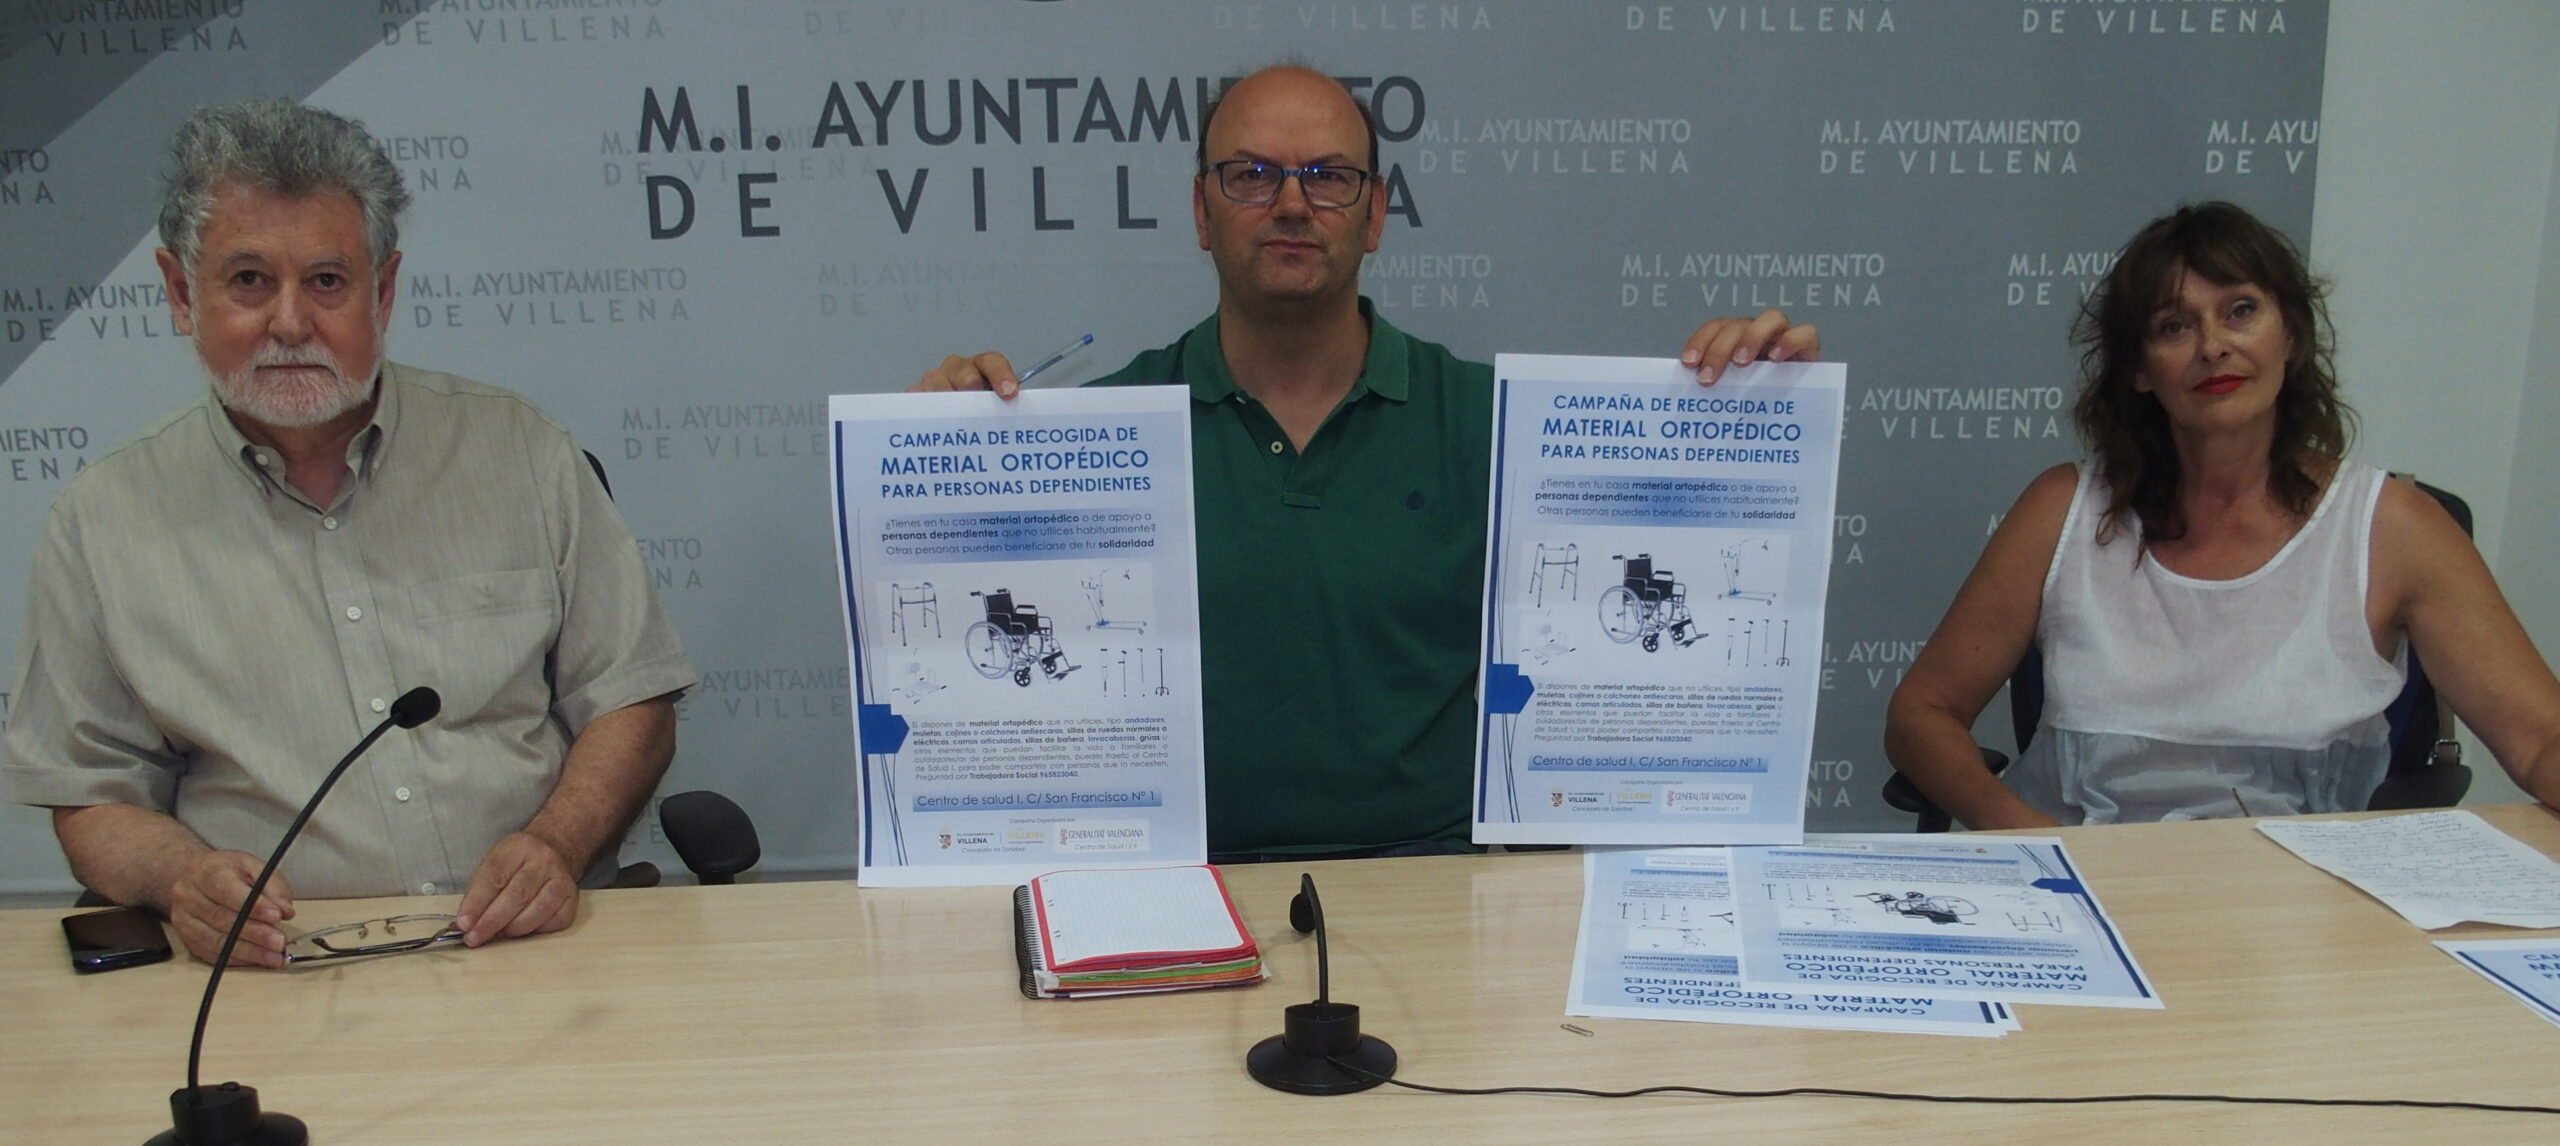 El centro de salud  Villena I inicia una campaña para la recogida de material ortopédico en desuso